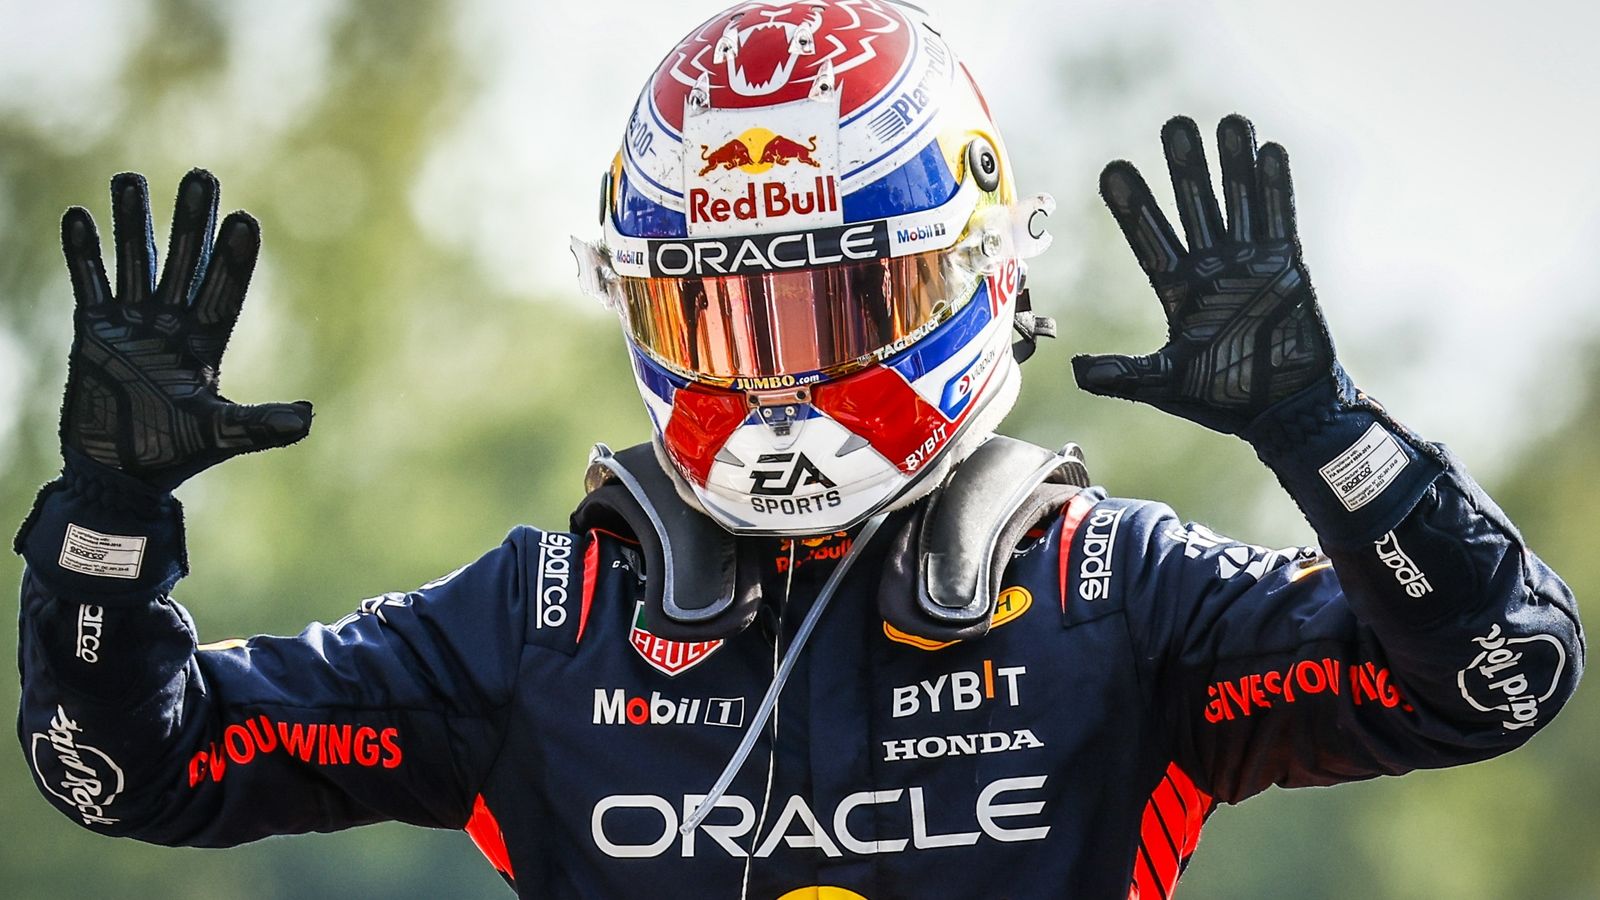 Gran Premio d’Italia: Max Verstappen batte Sergio Perez e supera il record di Sebastian Vettel in F1 per il maggior numero di vittorie consecutive |  Novità sulla Formula 1